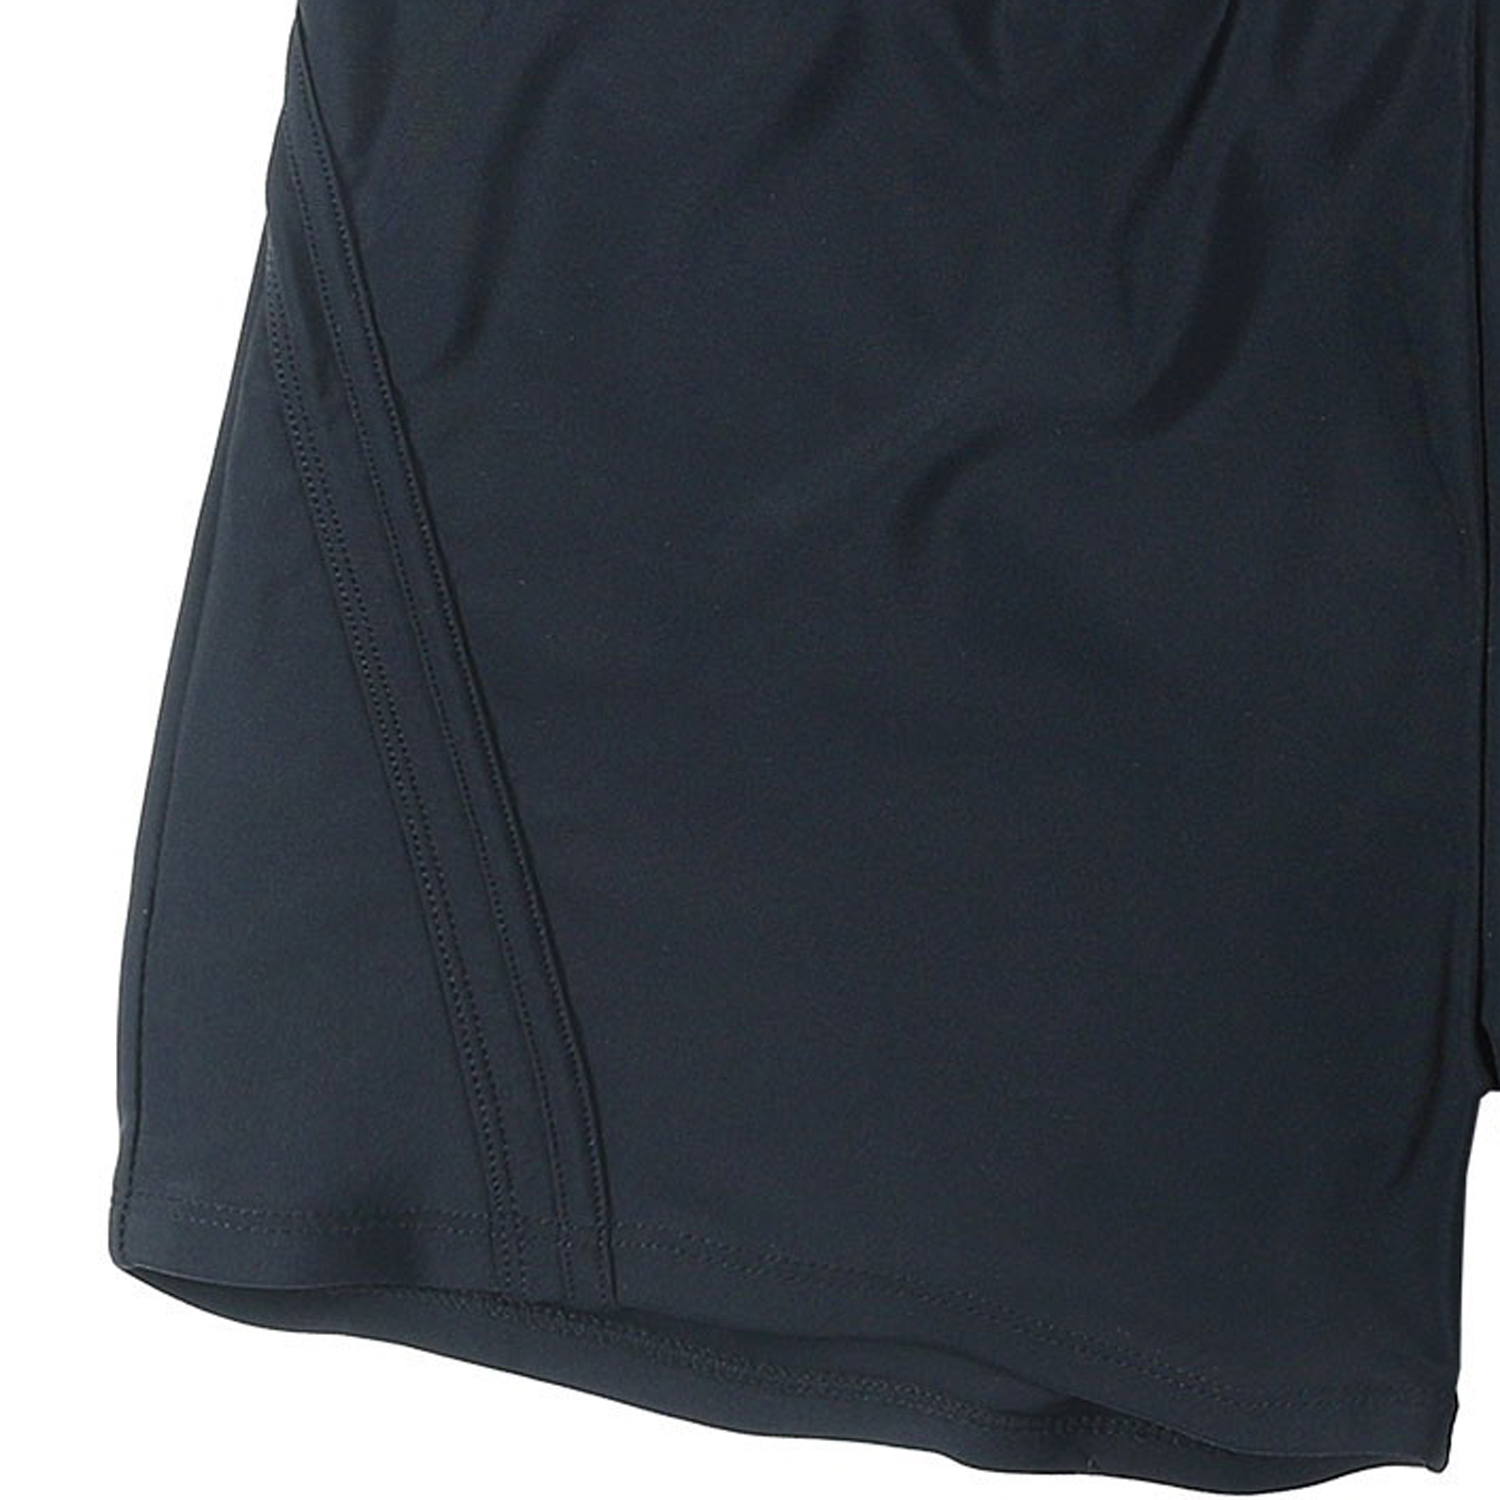 Boxer-Badeshorts in schwarz von Abraxas in großen Größen bis 10XL